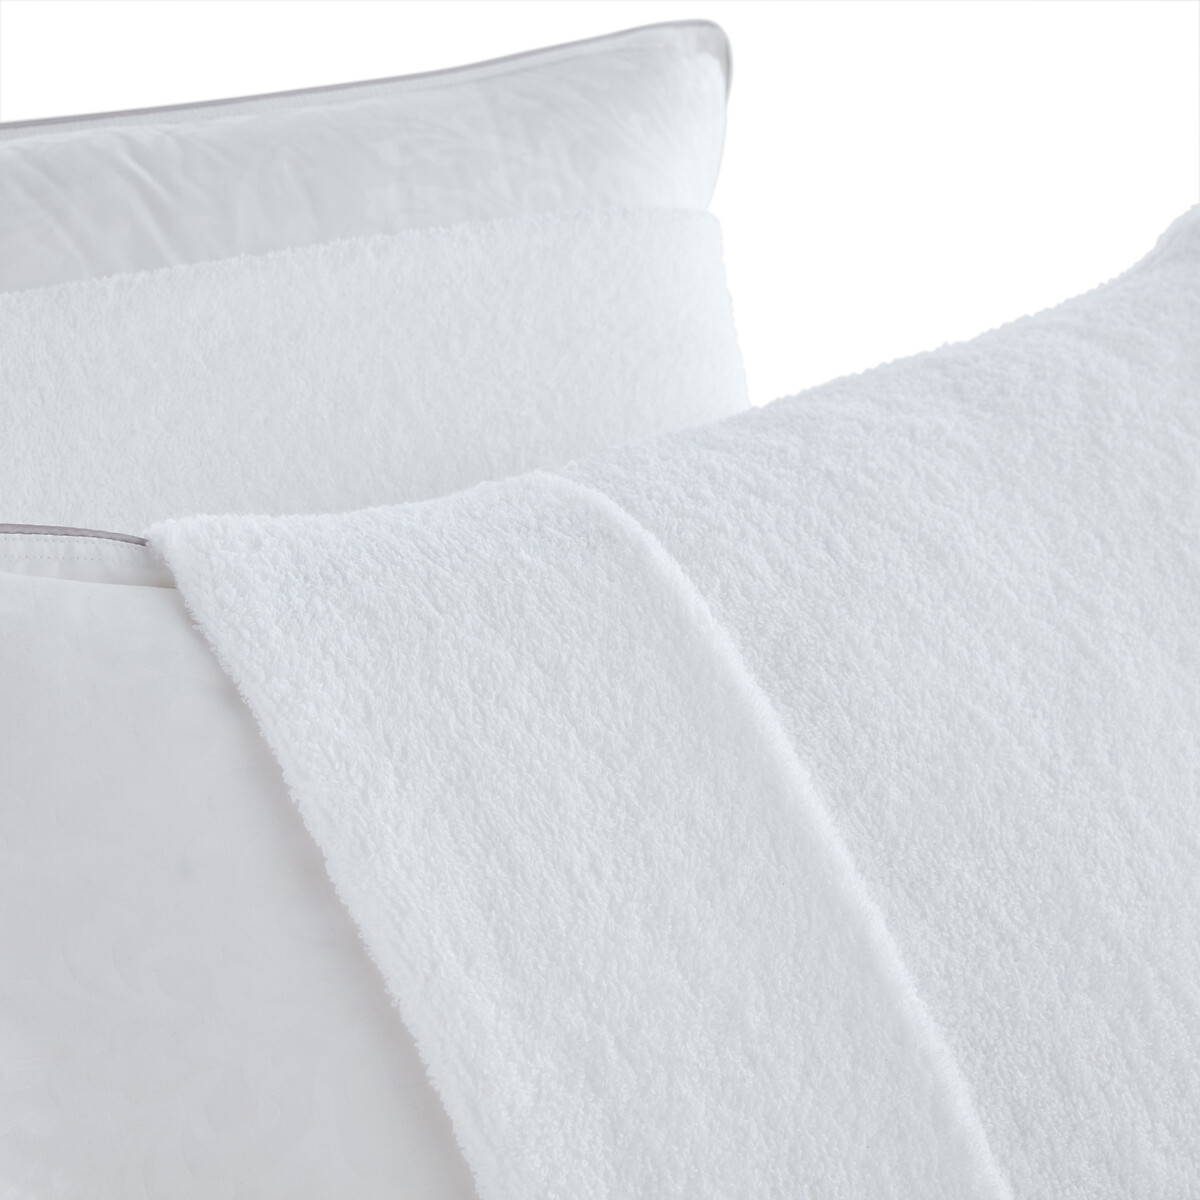 Чехол La Redoute Защитный на подушку из махровой ткани  хлопок 50 x 70 см белый, размер 50 x 70 см - фото 2